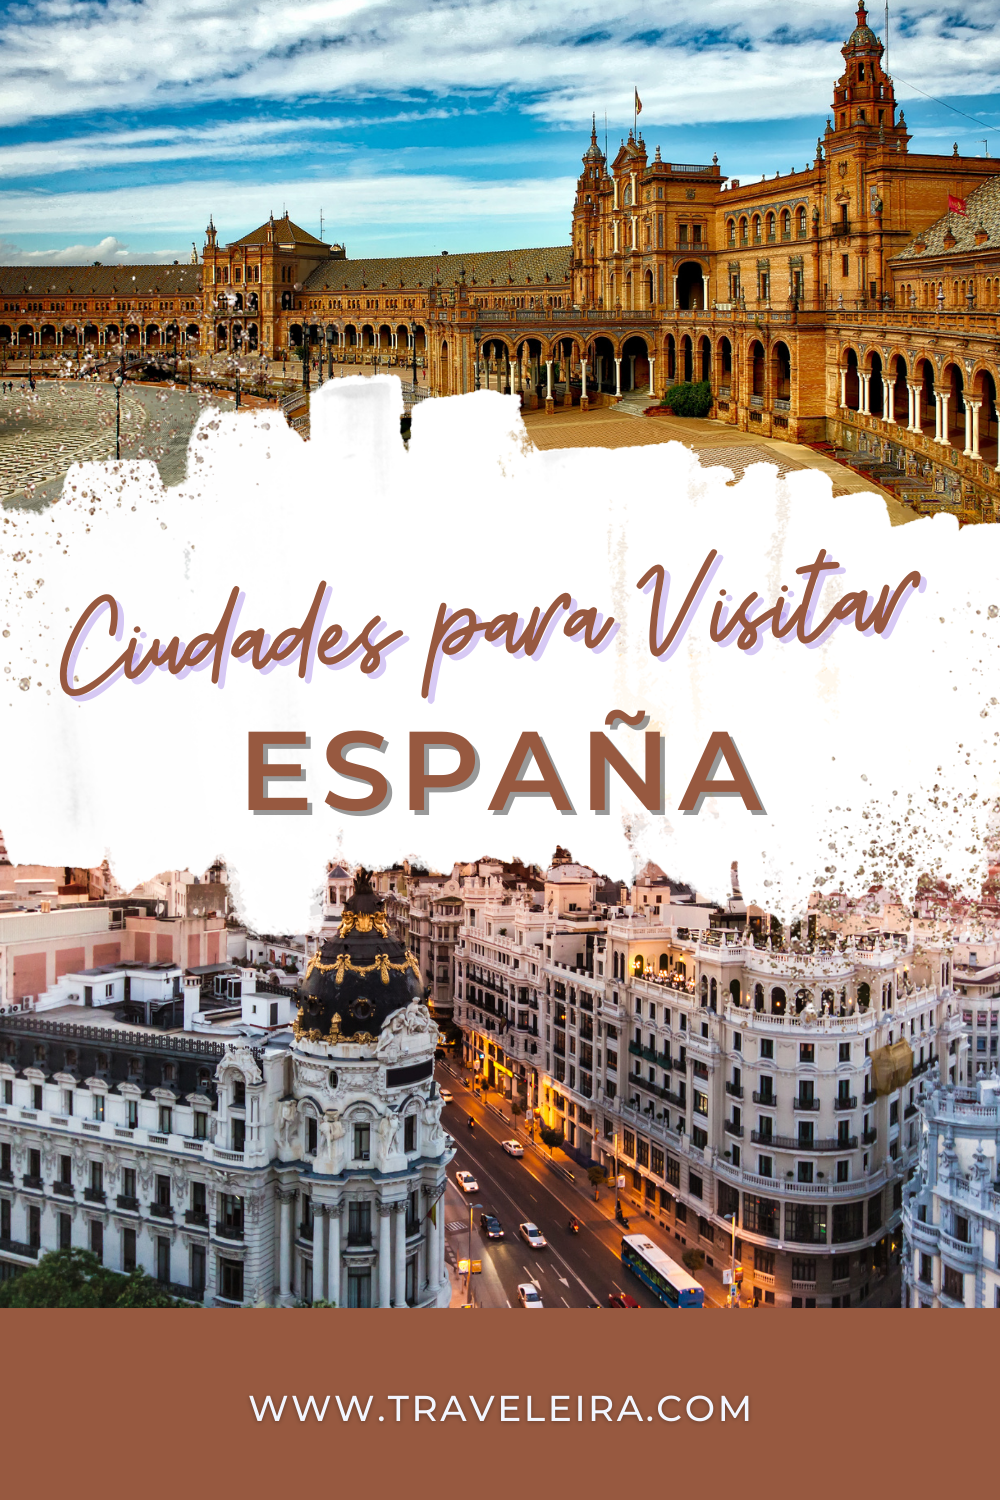 Descubre estas 6 ciudades de España para visitar. Vive la cultura, la arquitectura y la magia de cada destino. ¡Planifica tu viaje ahora!